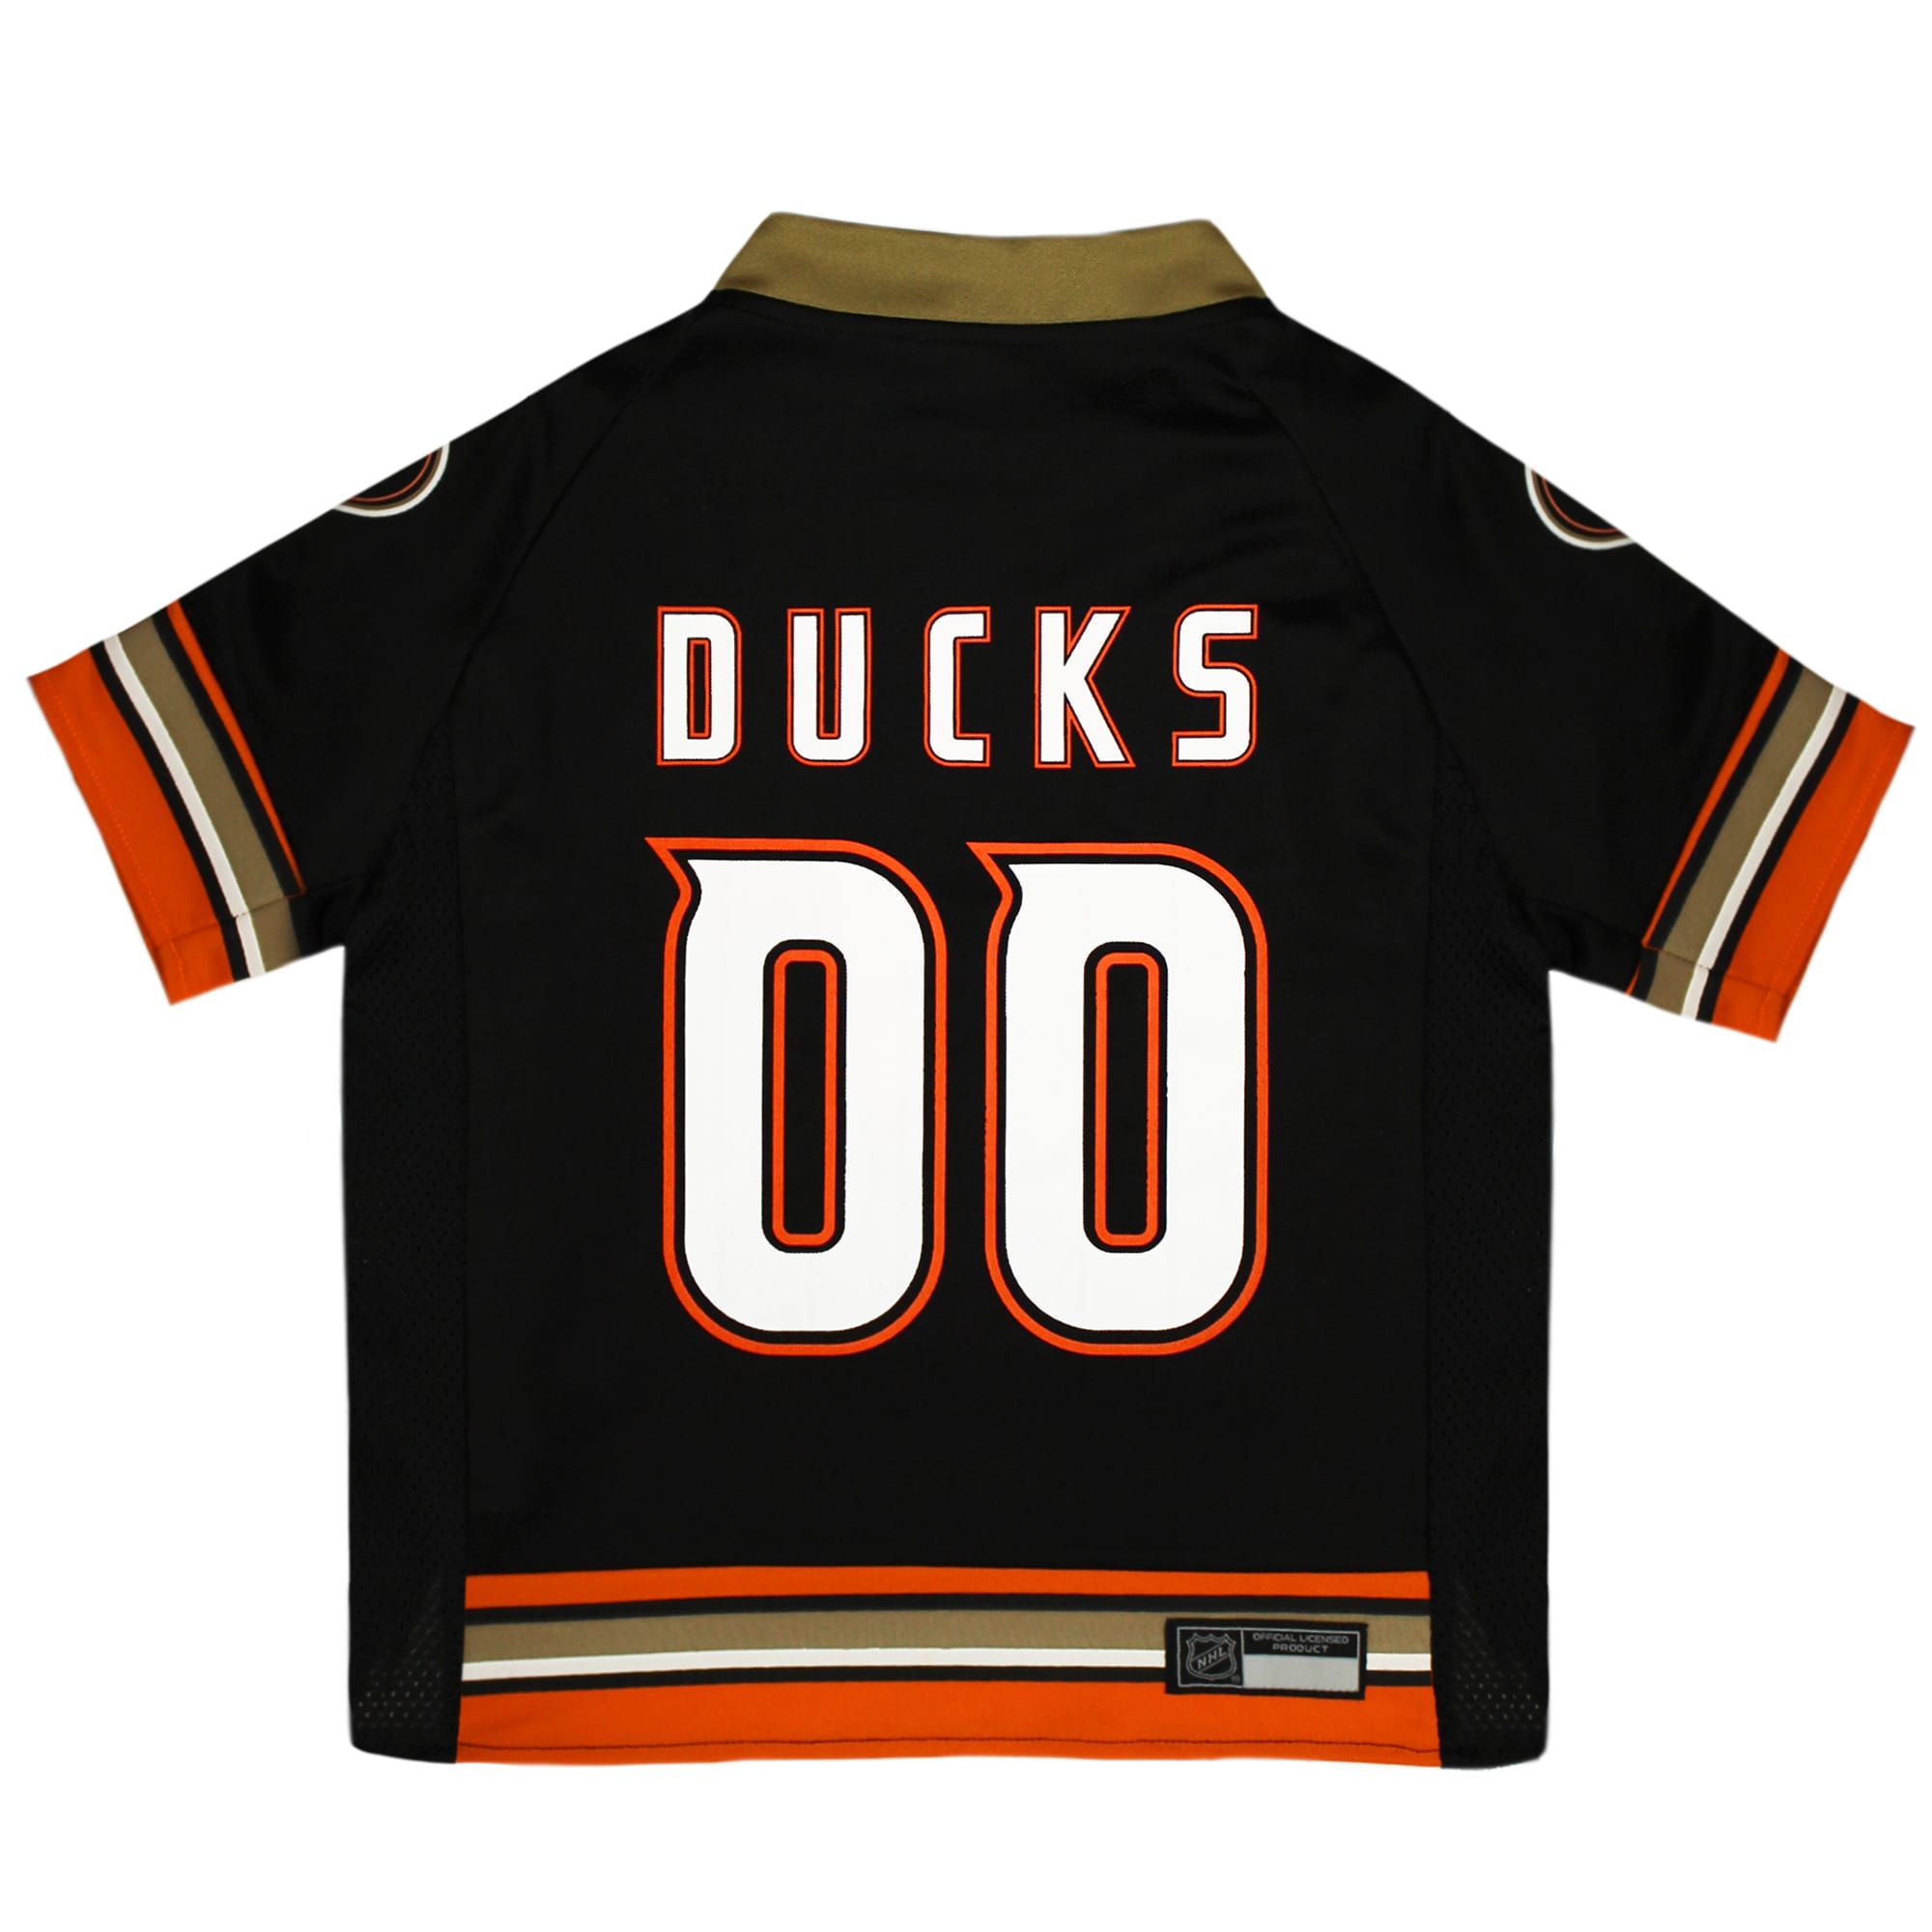 Anaheim Ducks Jerseys, Ducks Hockey Jerseys, Authentic Ducks